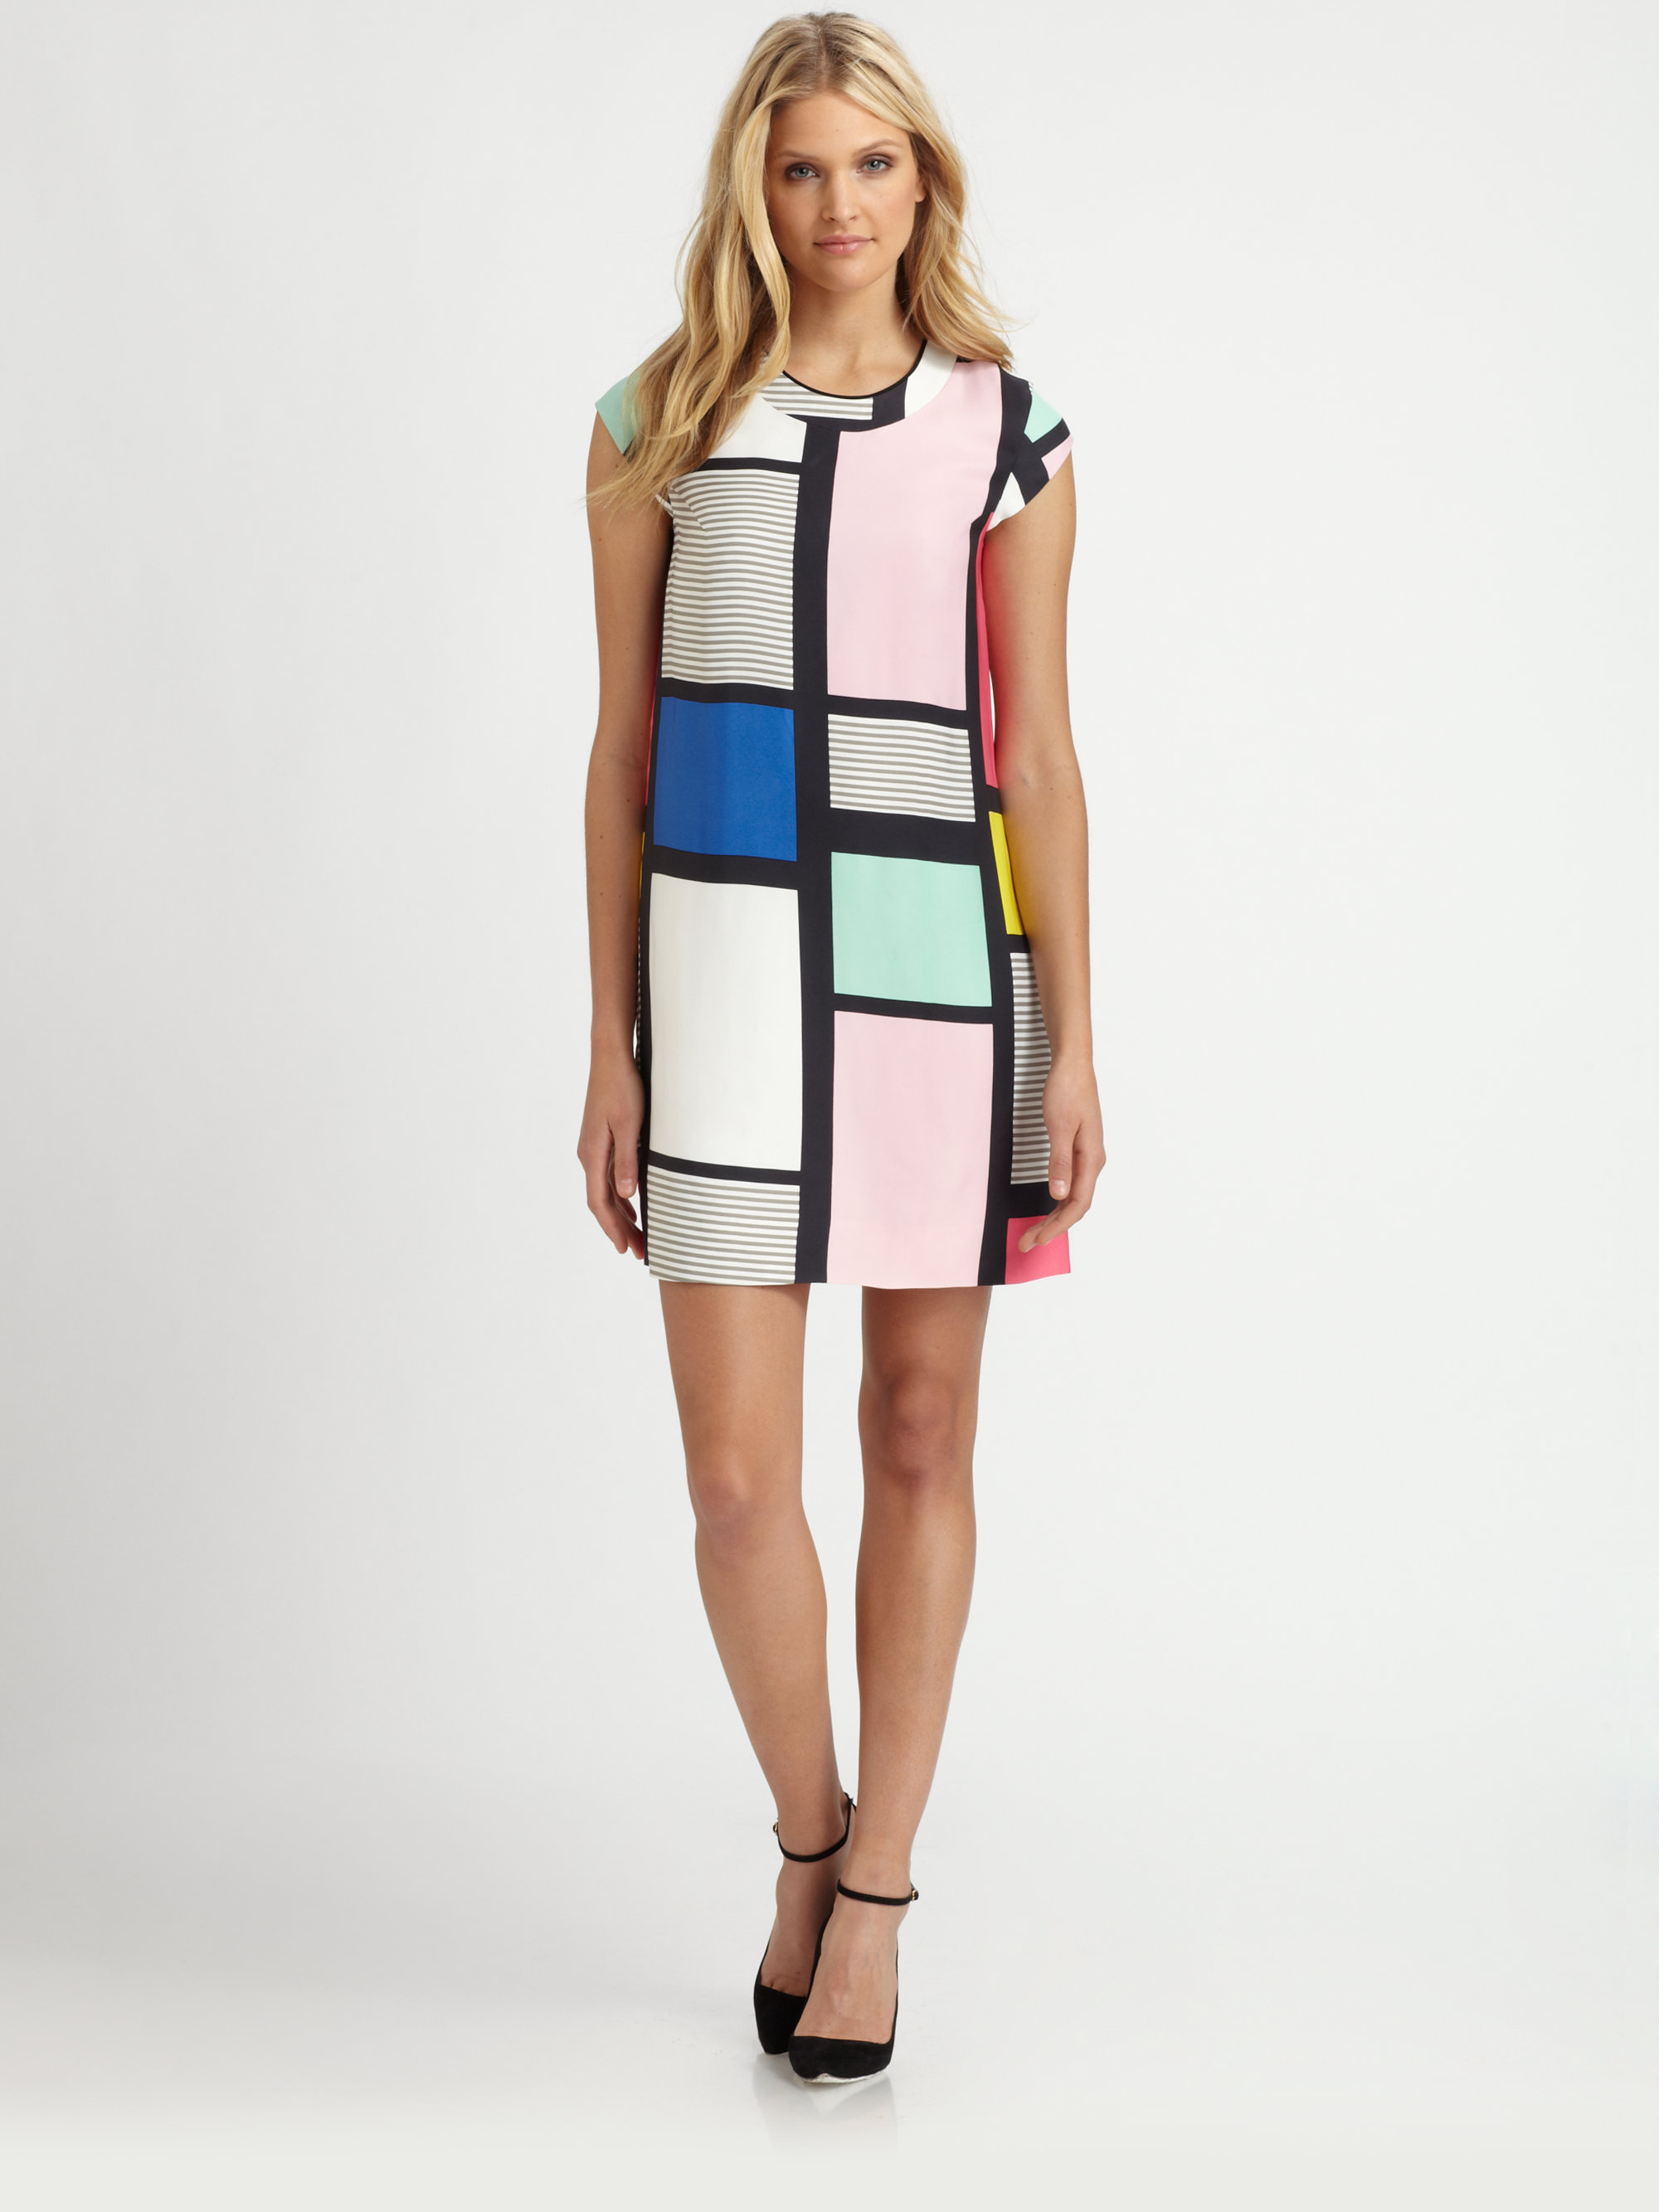 Kate Spade Claudette Colorblock Dress | Lyst